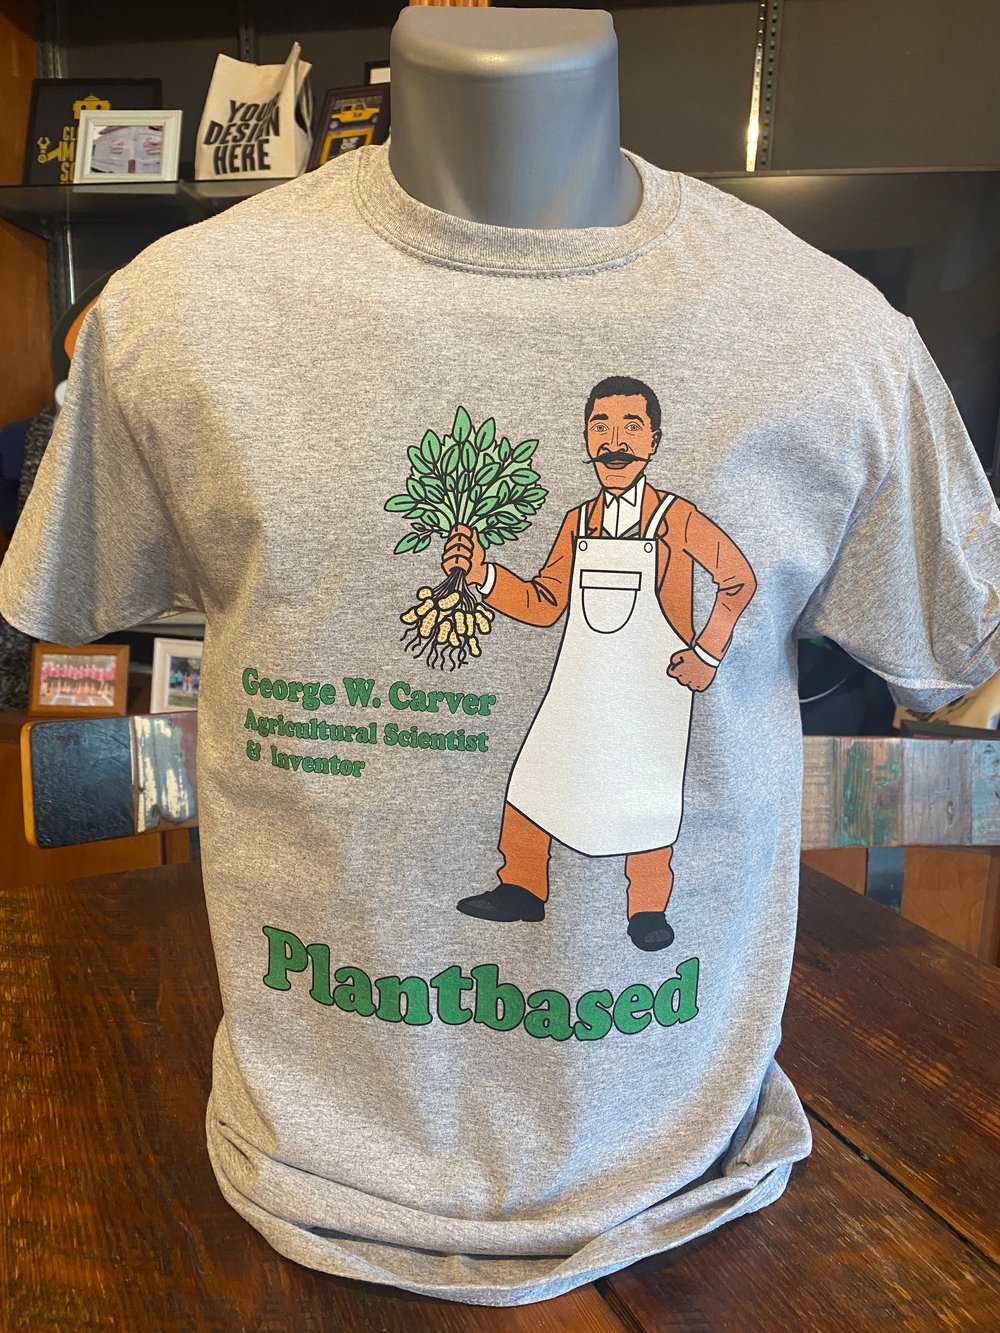 George Washington Carver "Plantbased"